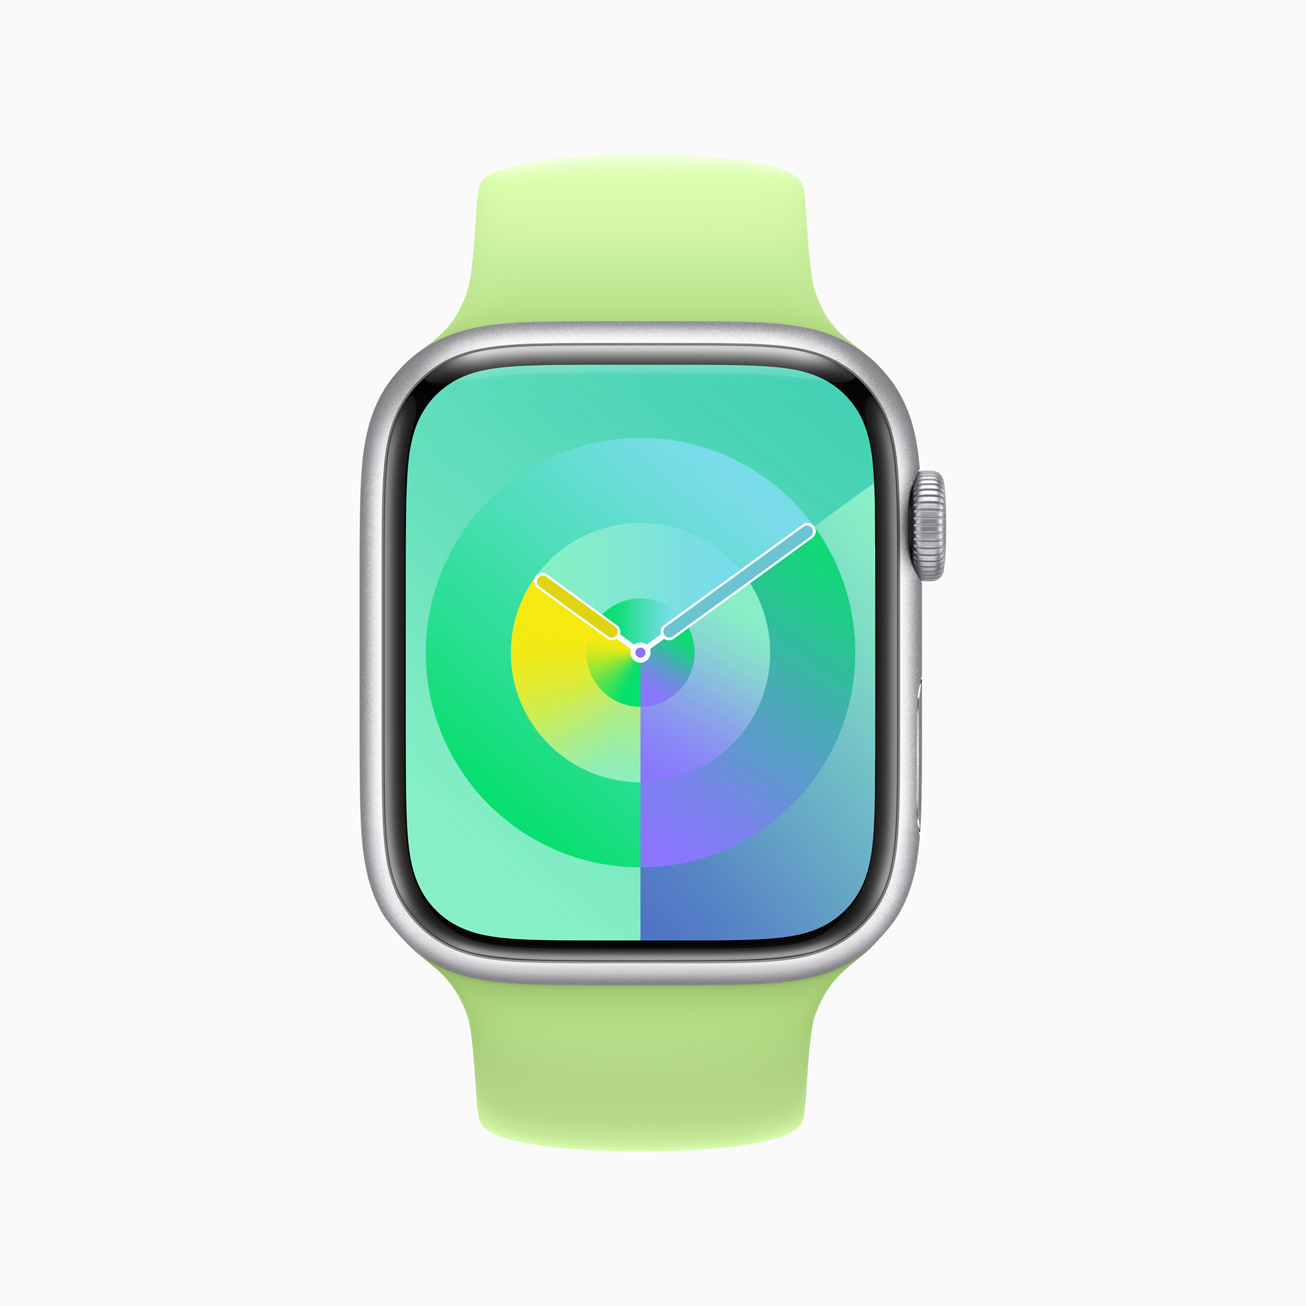 Apple-WWDC23-watchOS-10-new-Watch-faces-Palette-Emerald-230605.jpg